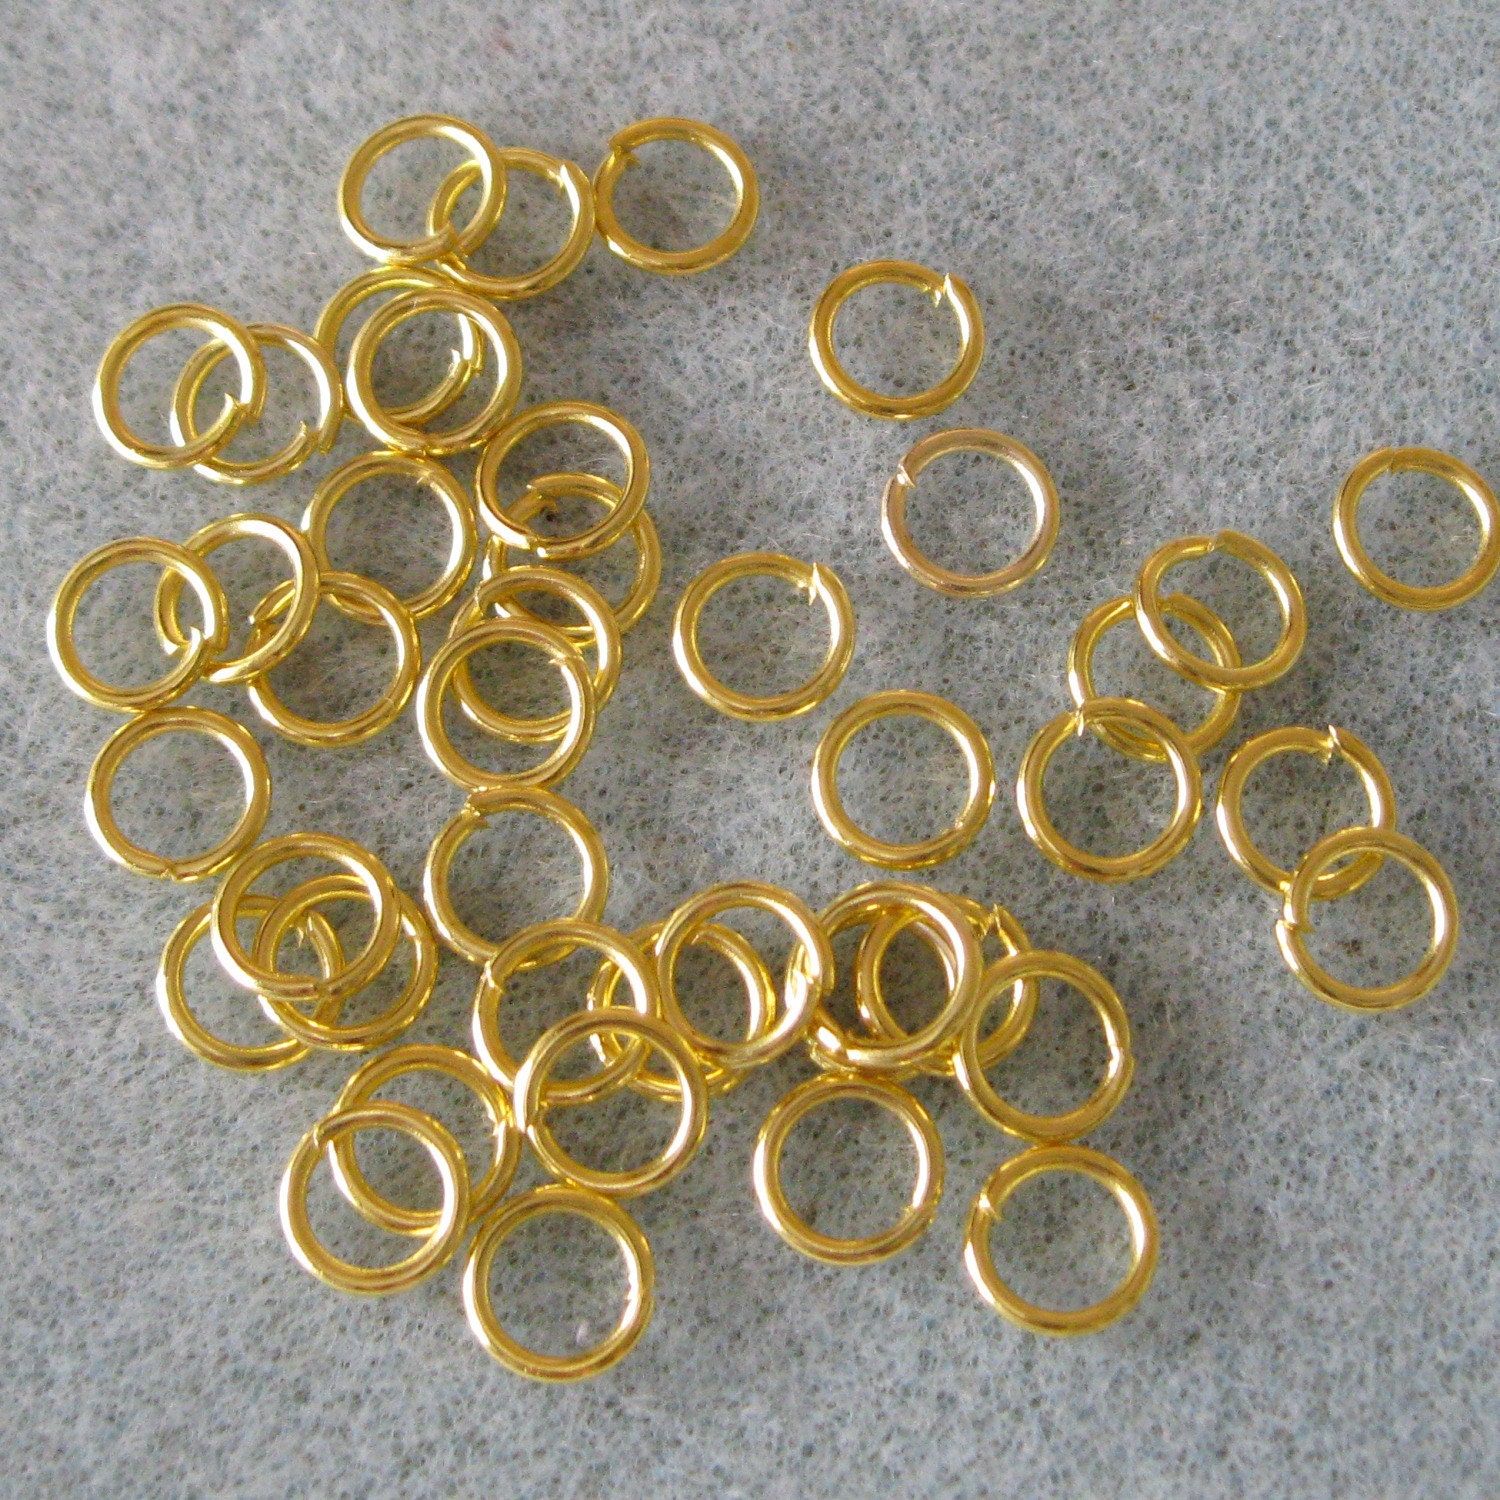 100 Antique Brass Split Ring Findings 6mm Bronze Split Rings for